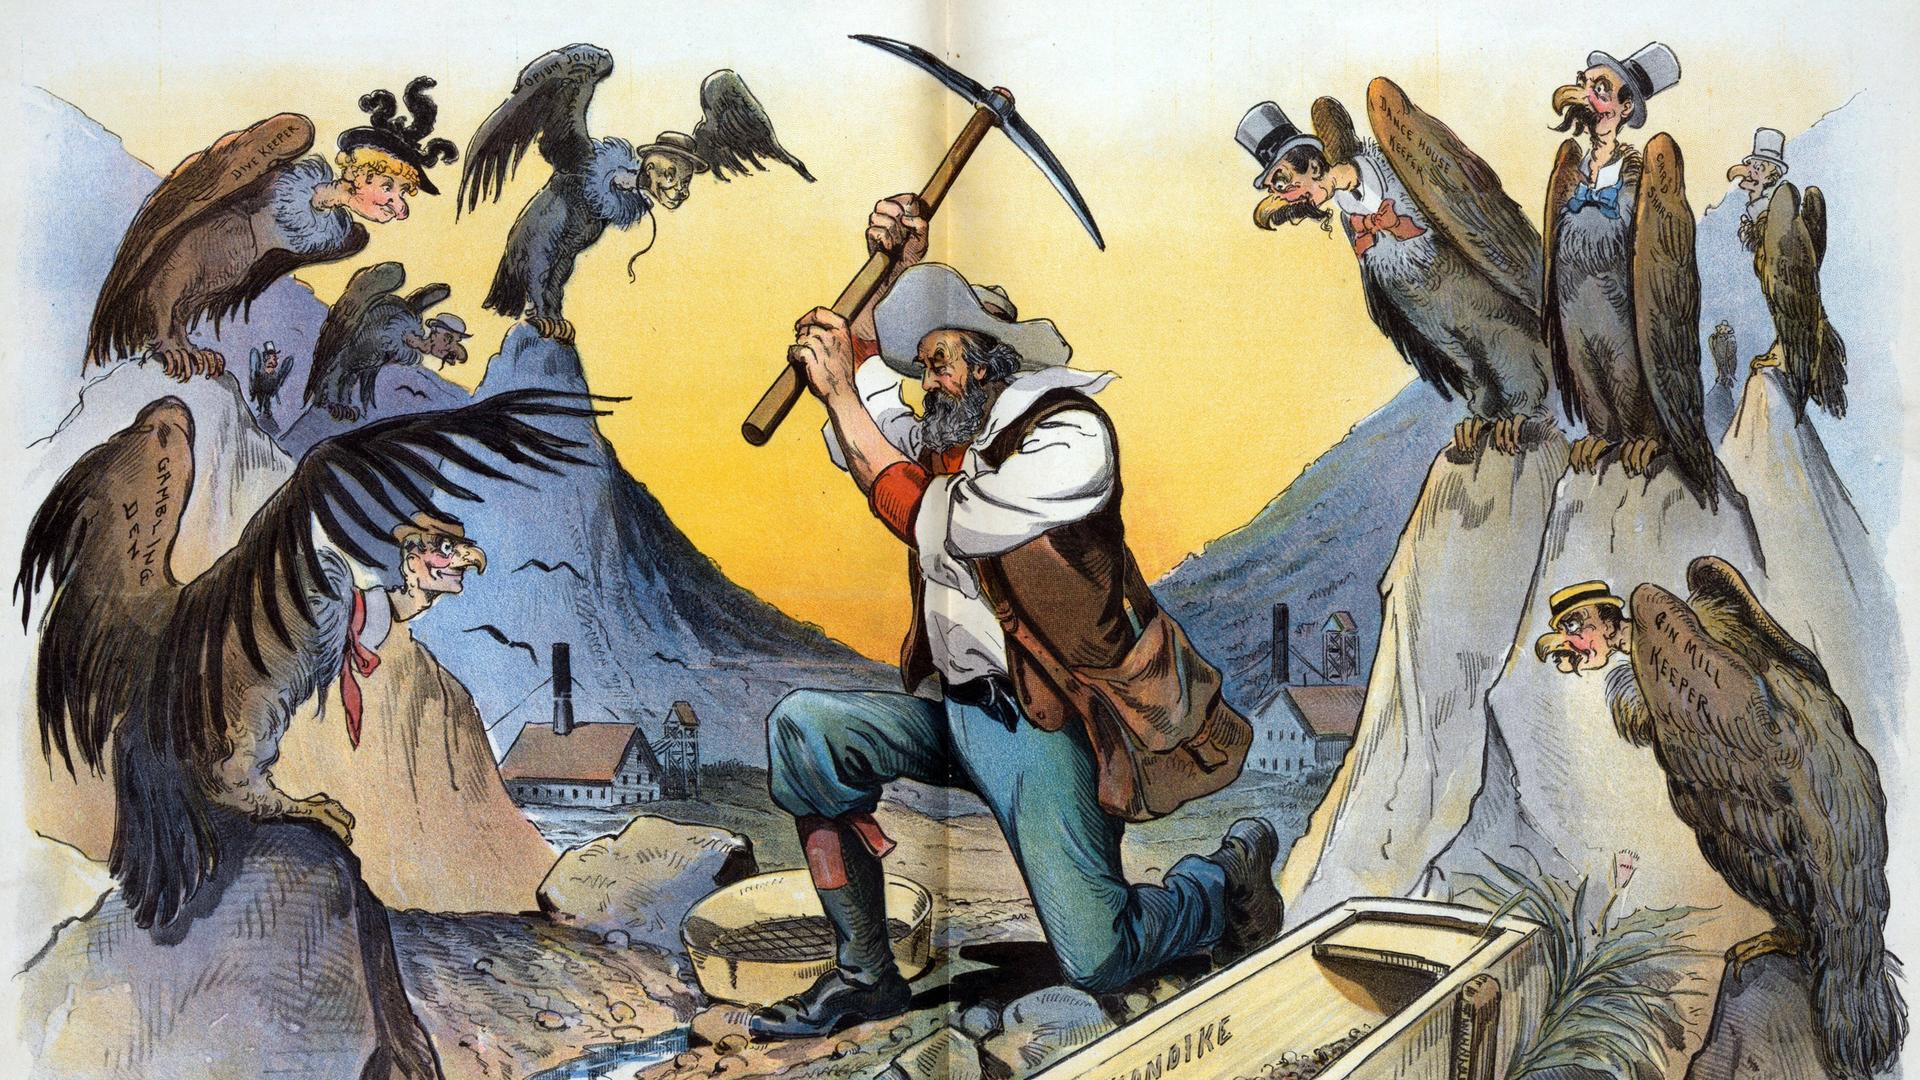 "Stille Teilhaber" so blickte der Karikaturist Louis Dalrymple 1897 auf den gerade ausgebrochenen Klondike-Goldrausch